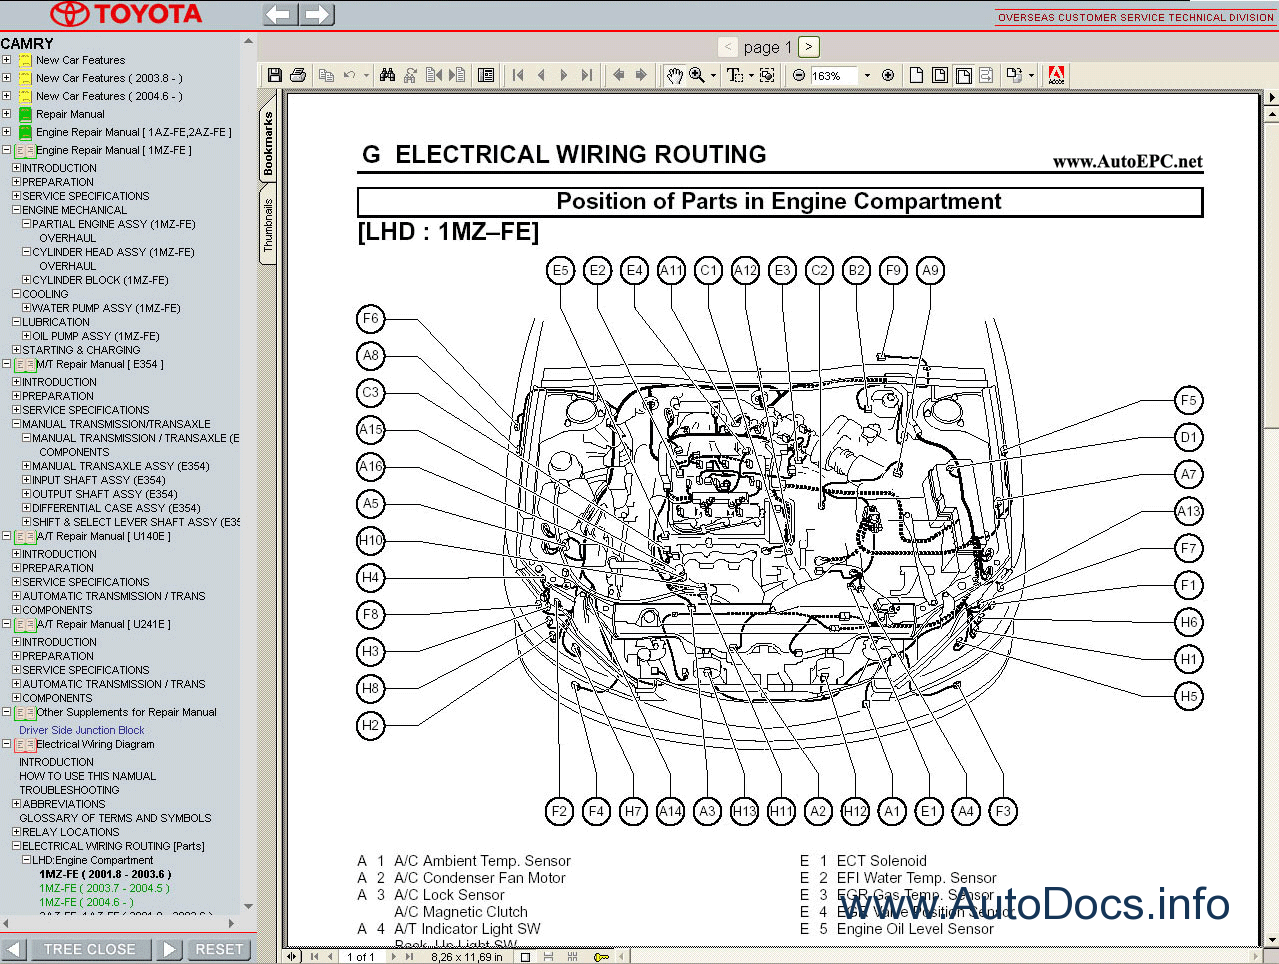 98 camry repair manual pdf